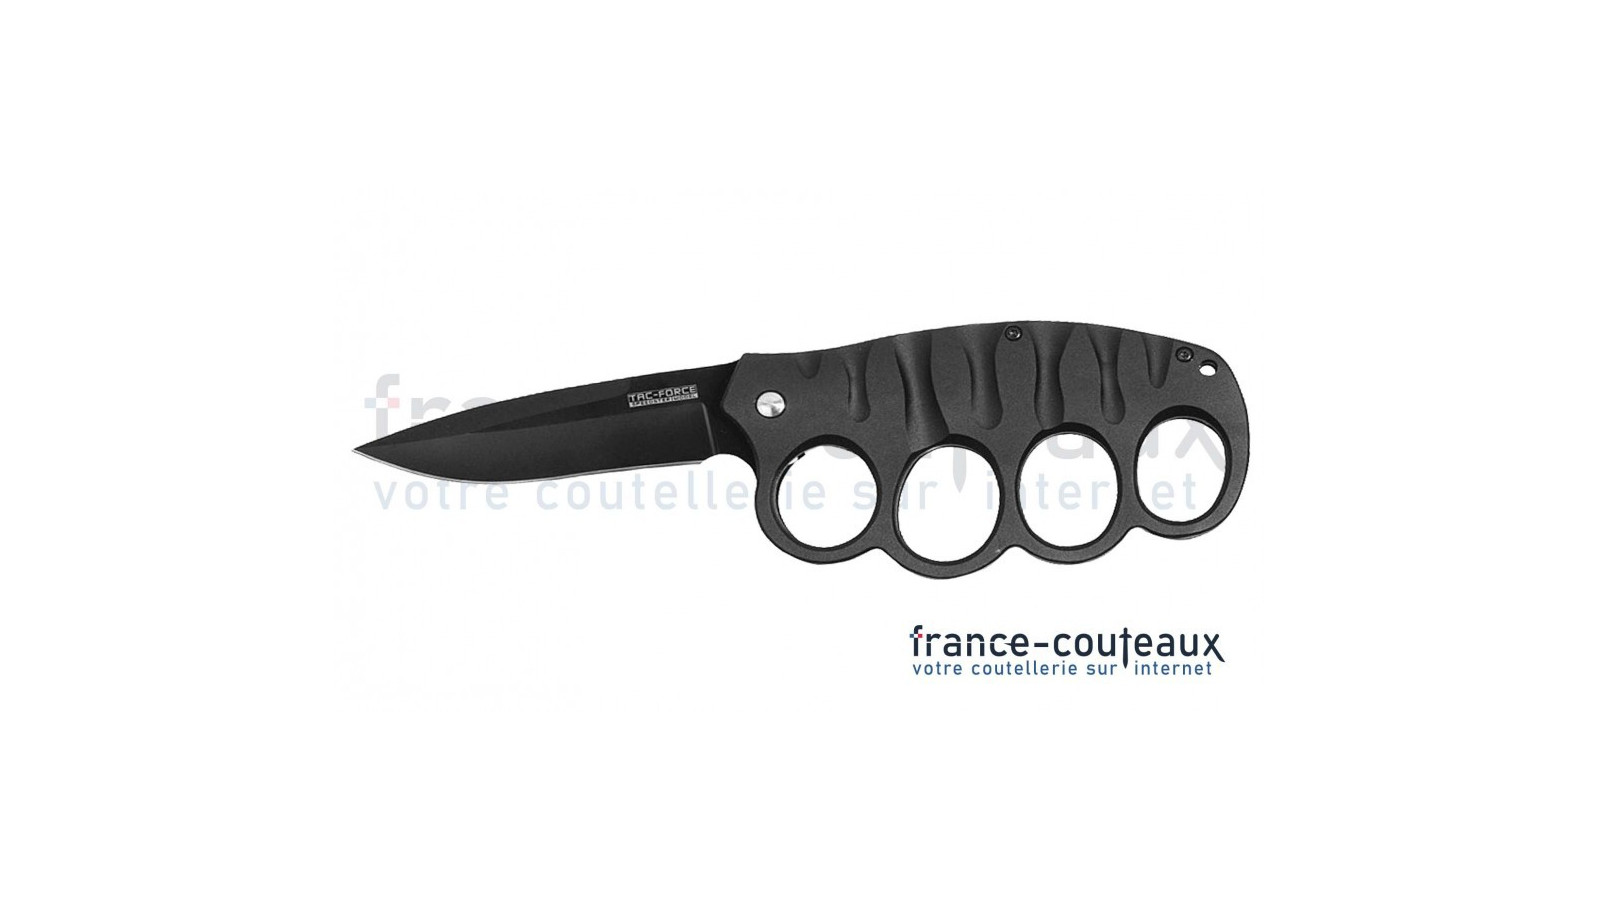 MaxKnives MK156 - Couteau / Poing Américain